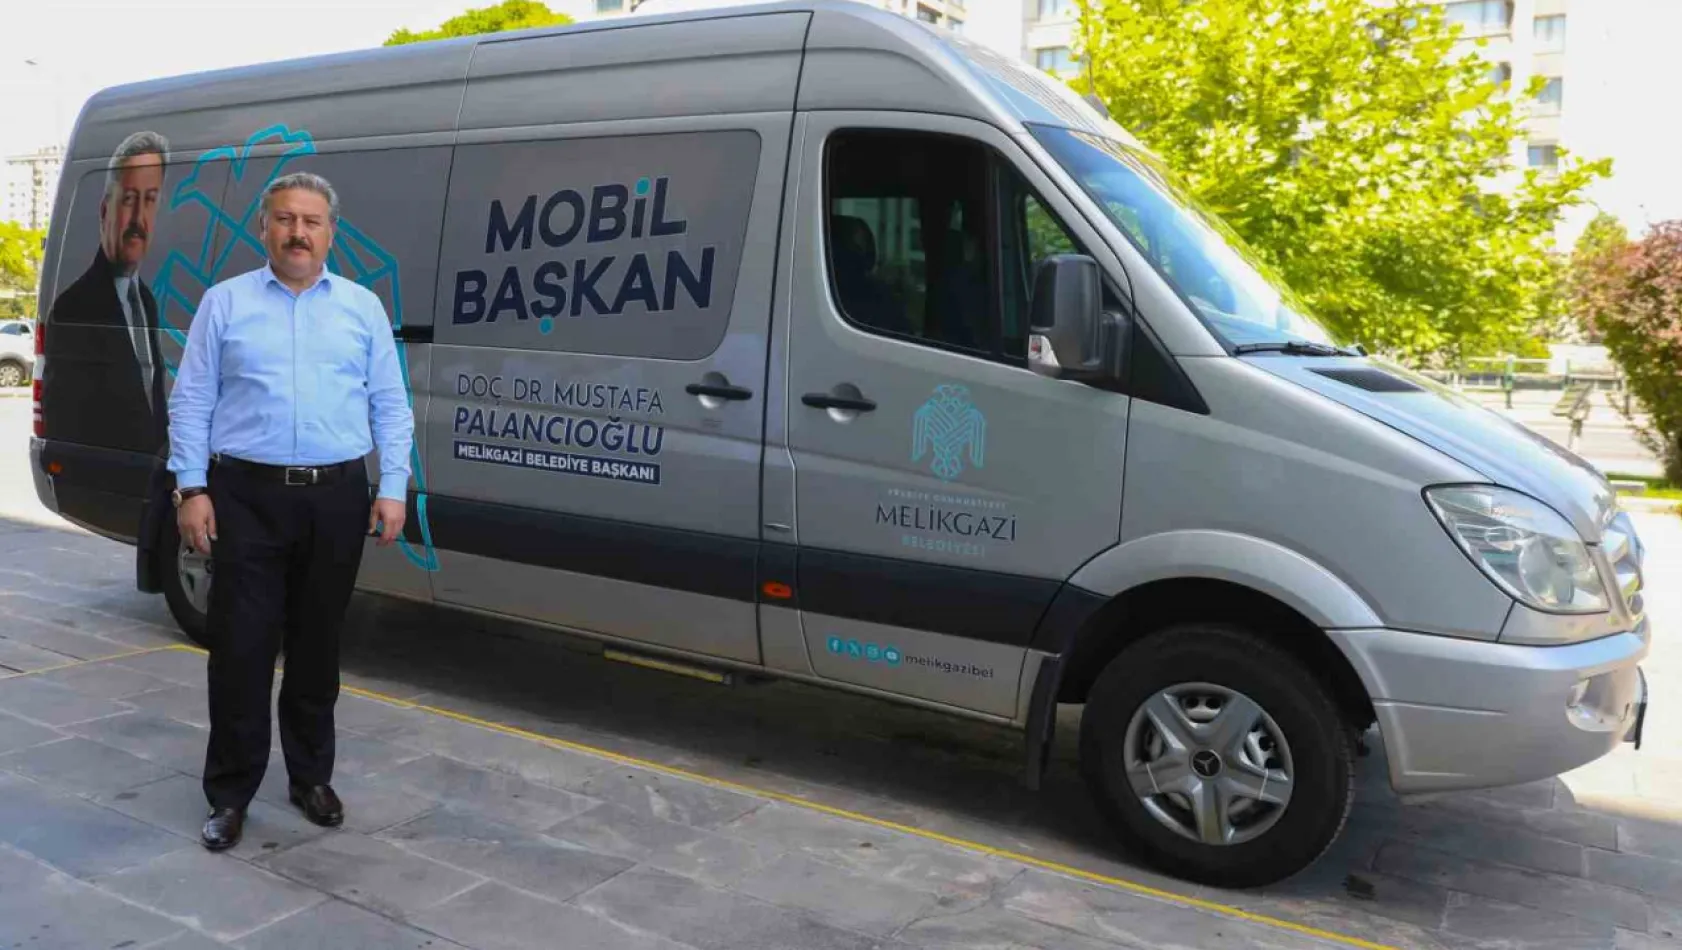 Başkan Palancıoğlu, mobil başkanla her hafta bir mahallede